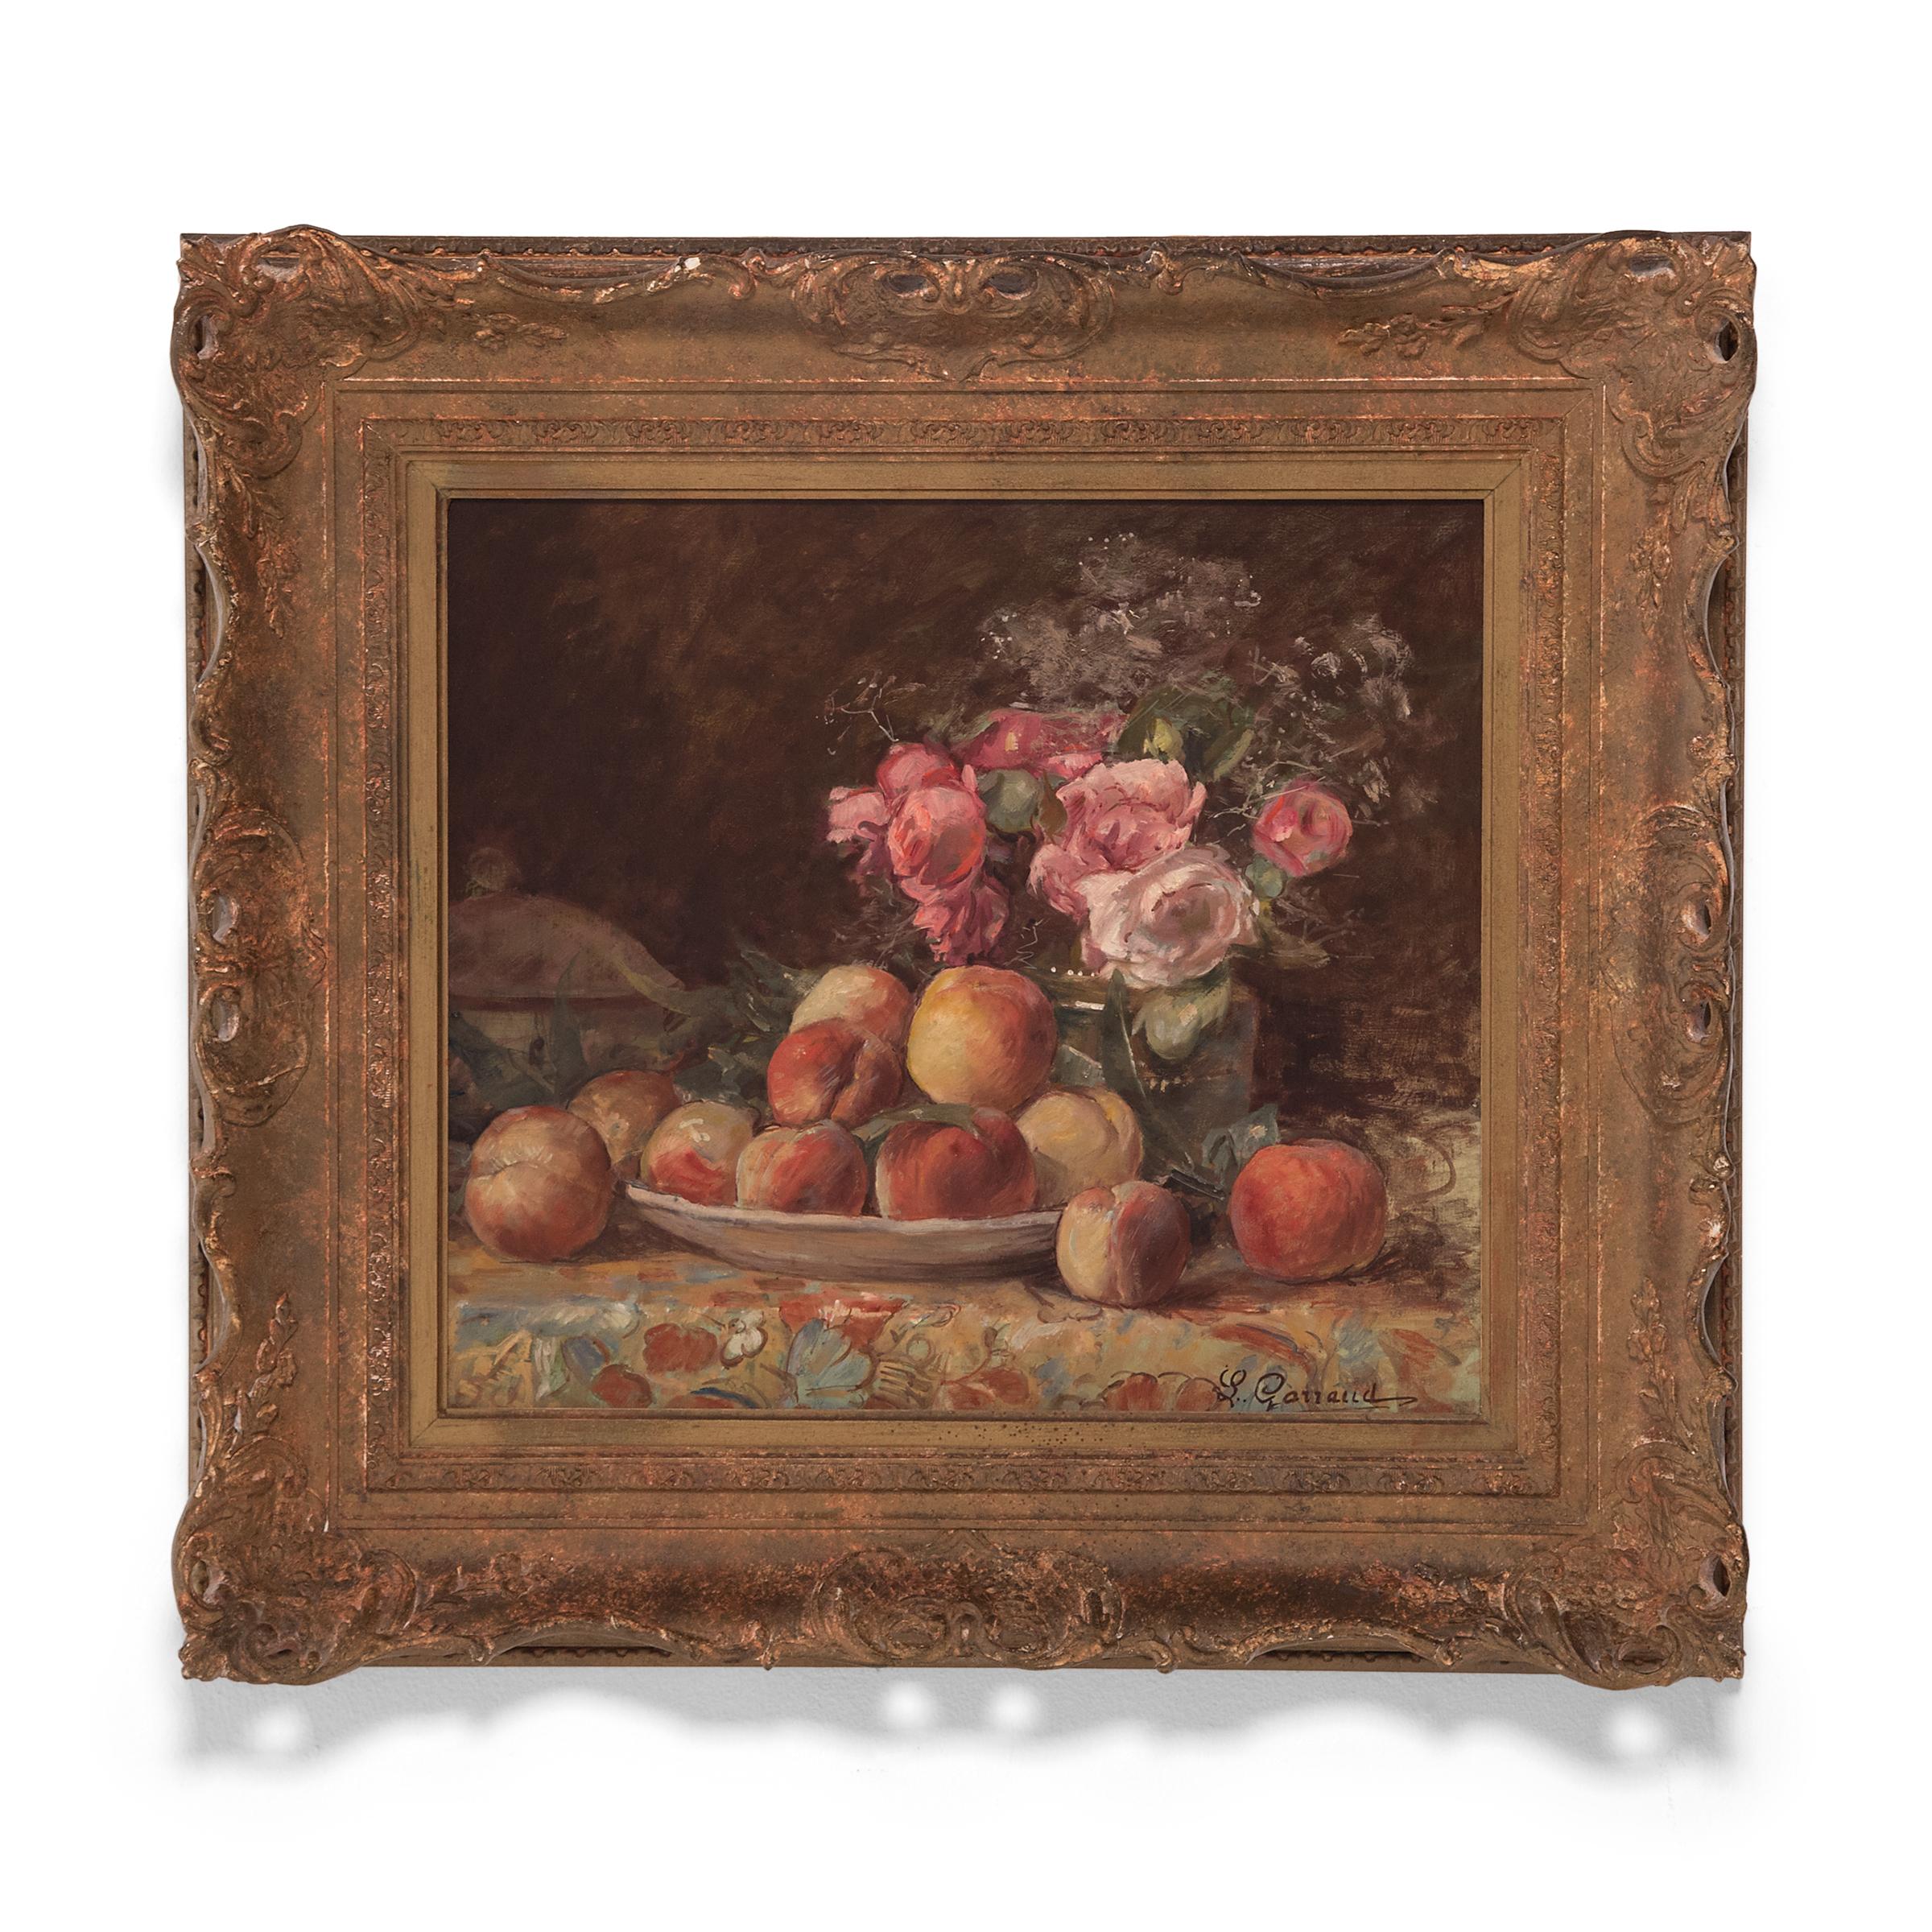 « Nature morte de fruits et de fleurs », huile sur toile - Painting de Leon Garraud